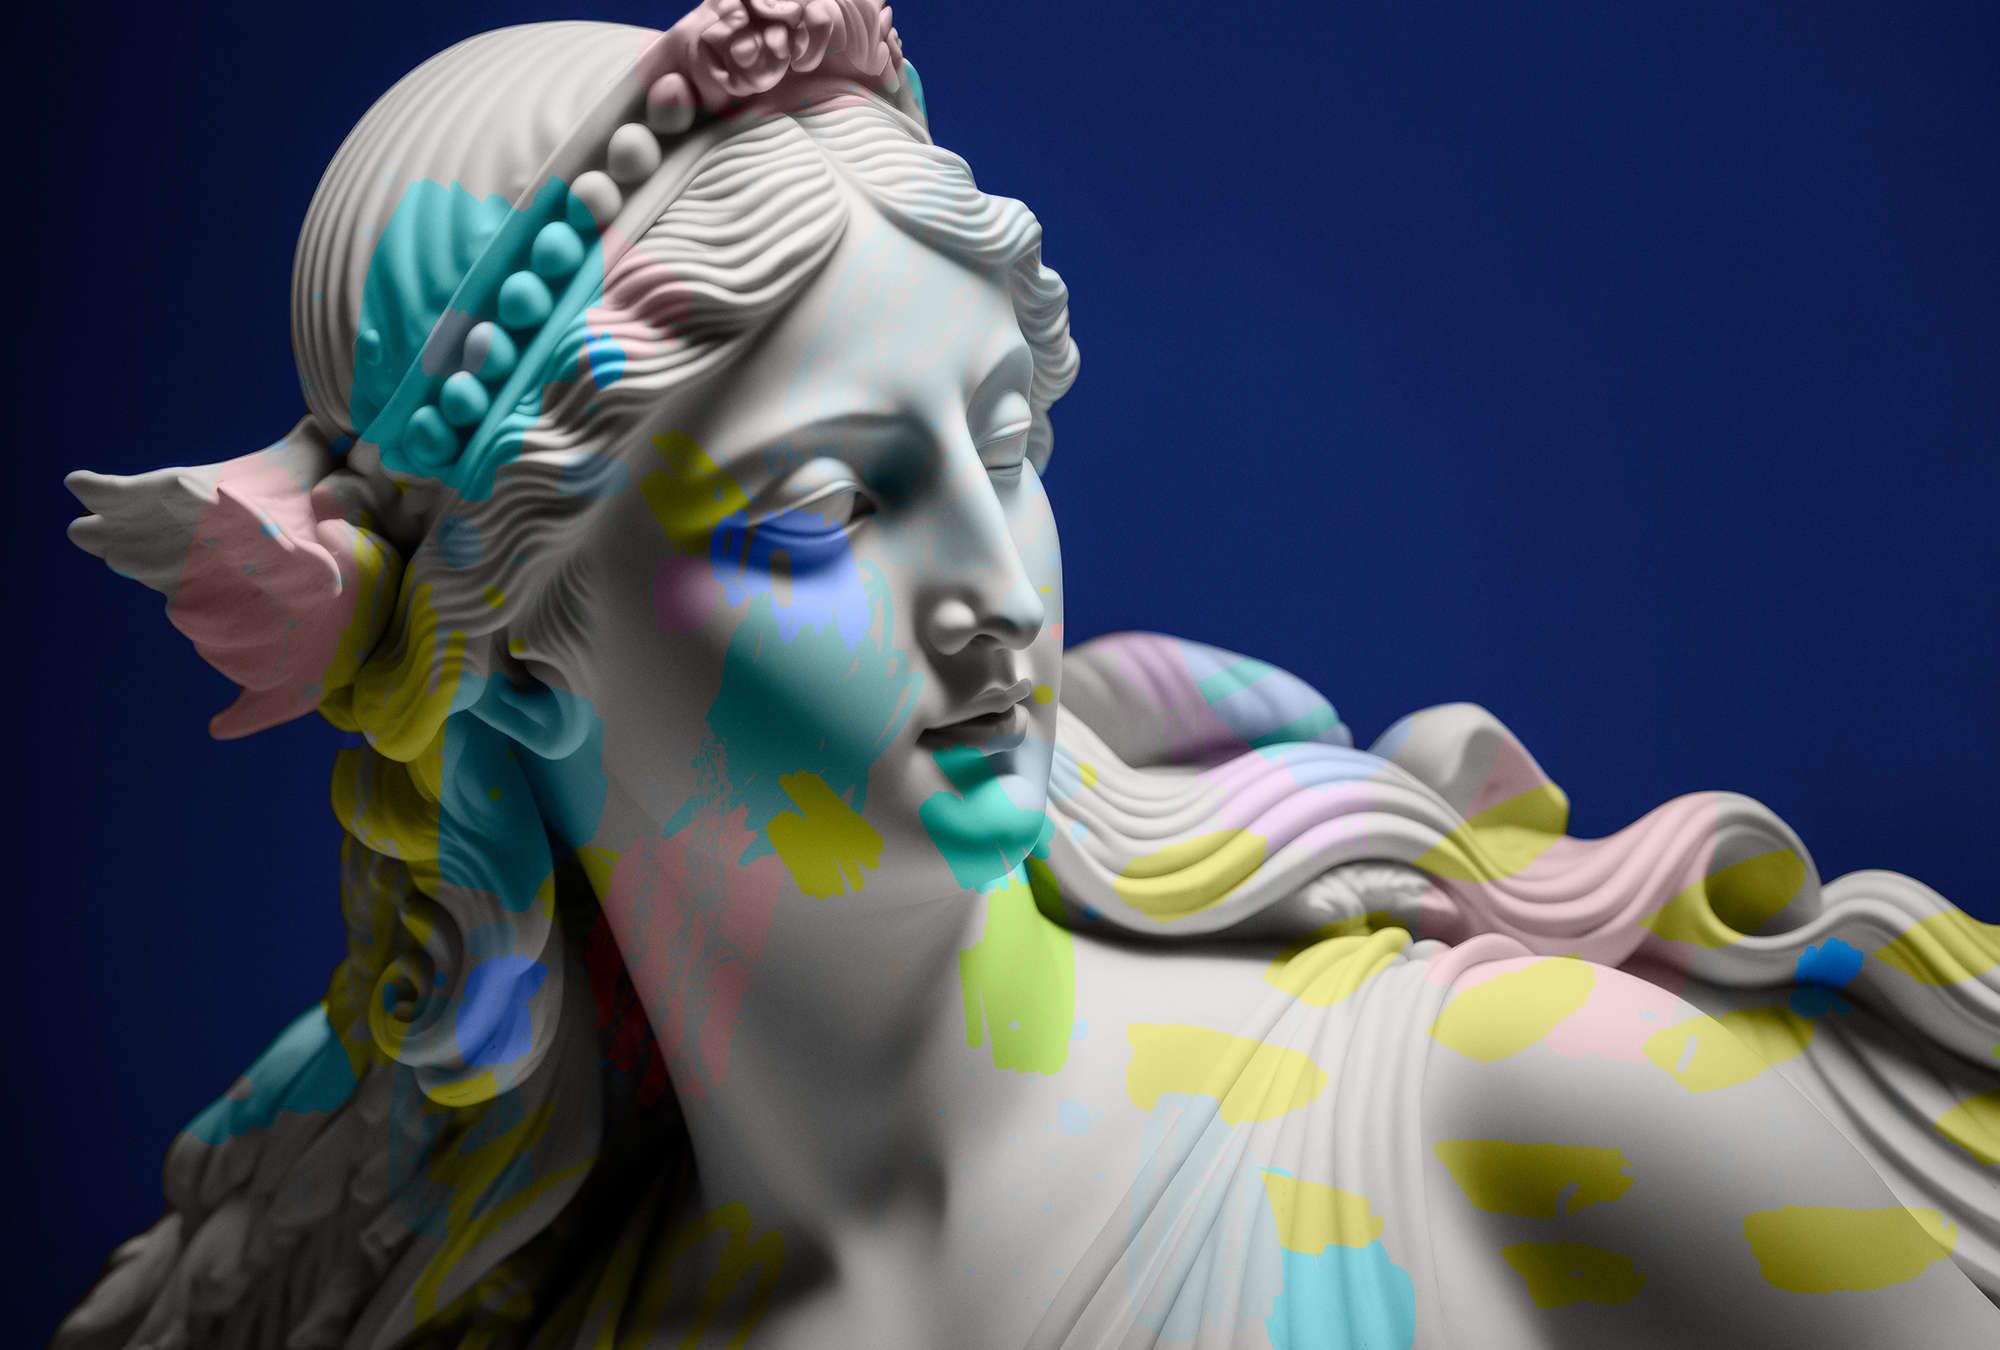             Fotomural »anthea« - Escultura femenina con toques de color - Material sin tejer liso, ligeramente nacarado
        